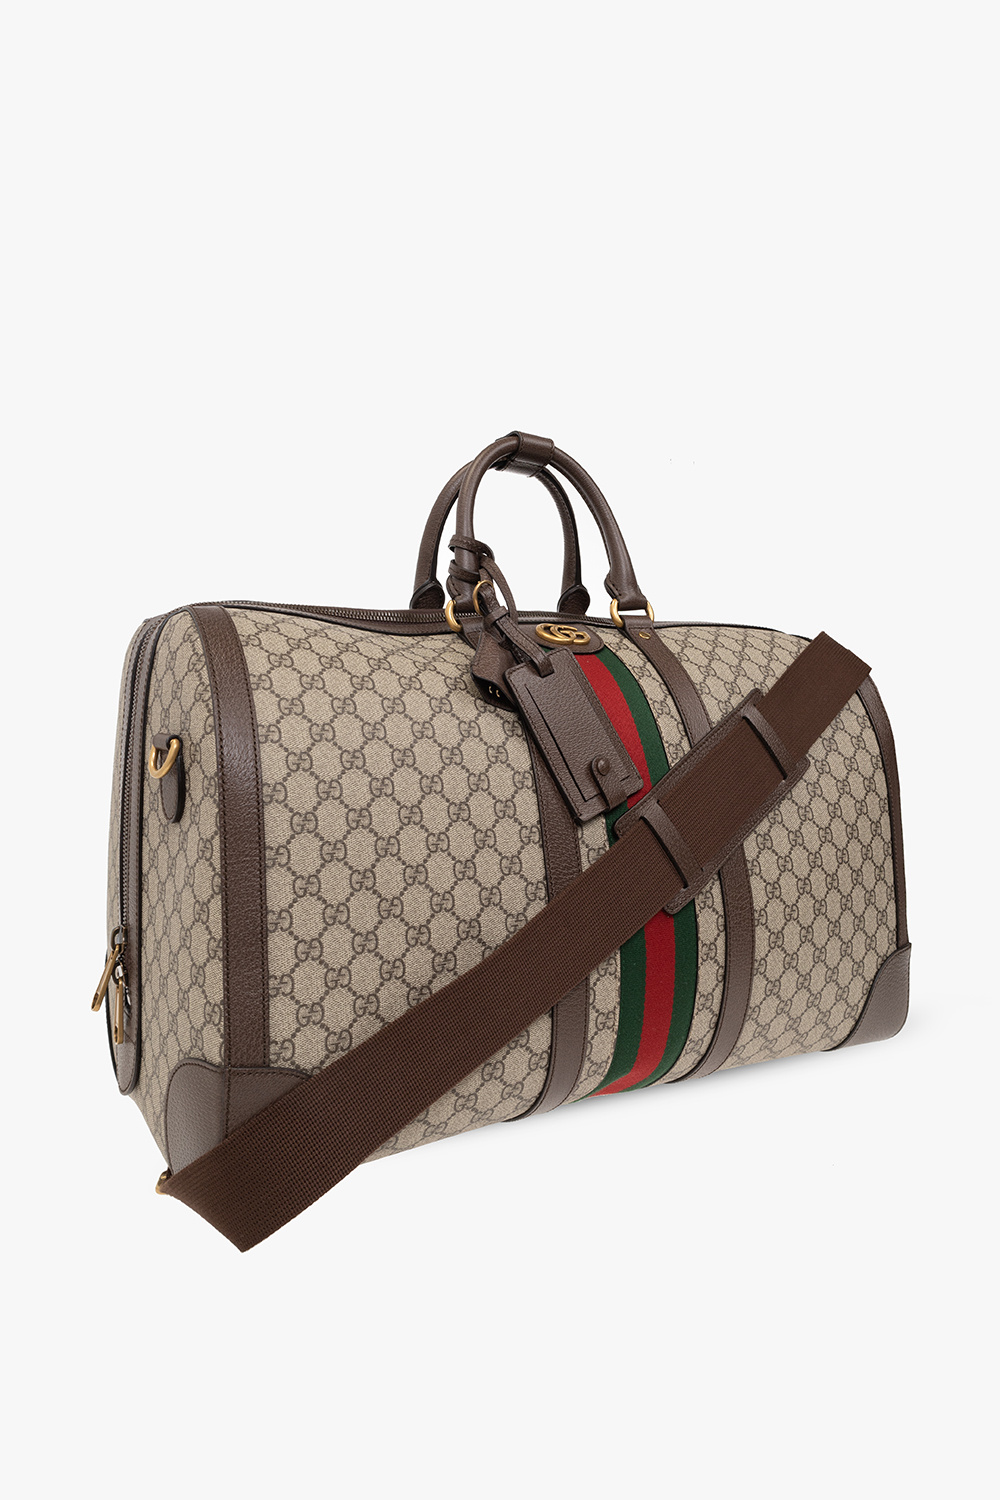 Gucci Large Gucci Savoy Duffle Bag - Farfetch